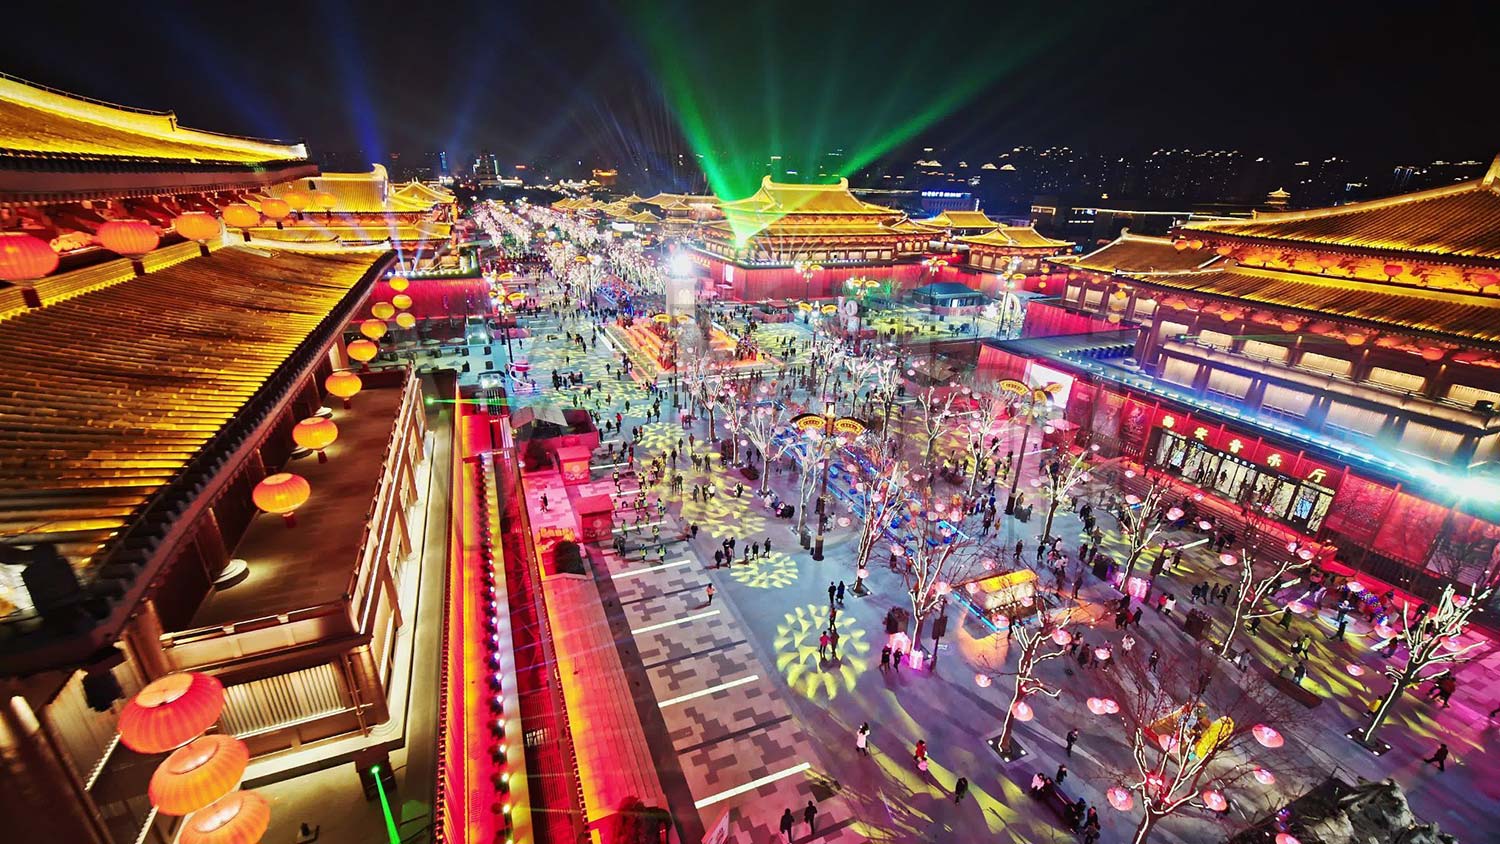 Tour du lịch Trung Quốc: Nam Ninh - Shopping 3 ngày 2 đêm